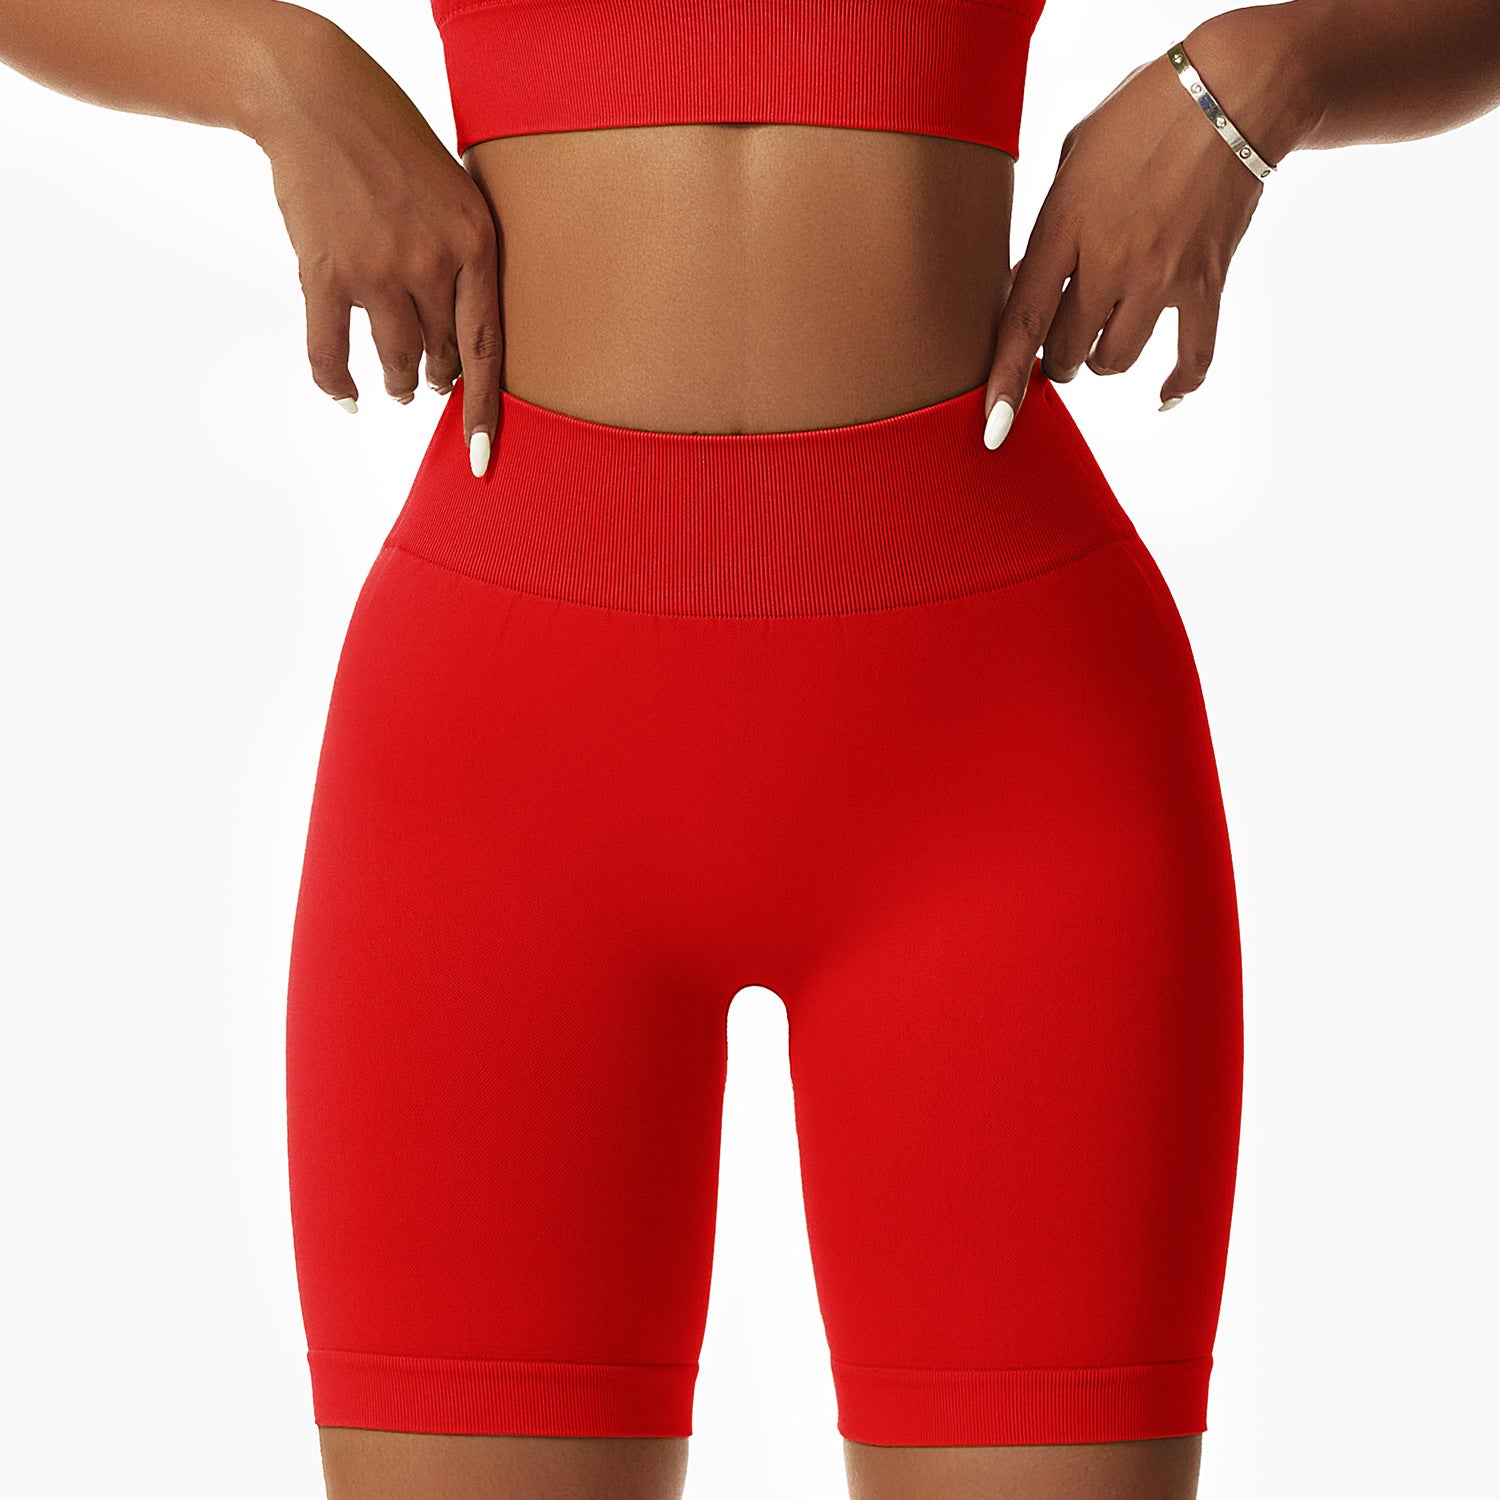 Seamless butt lift workout shorts